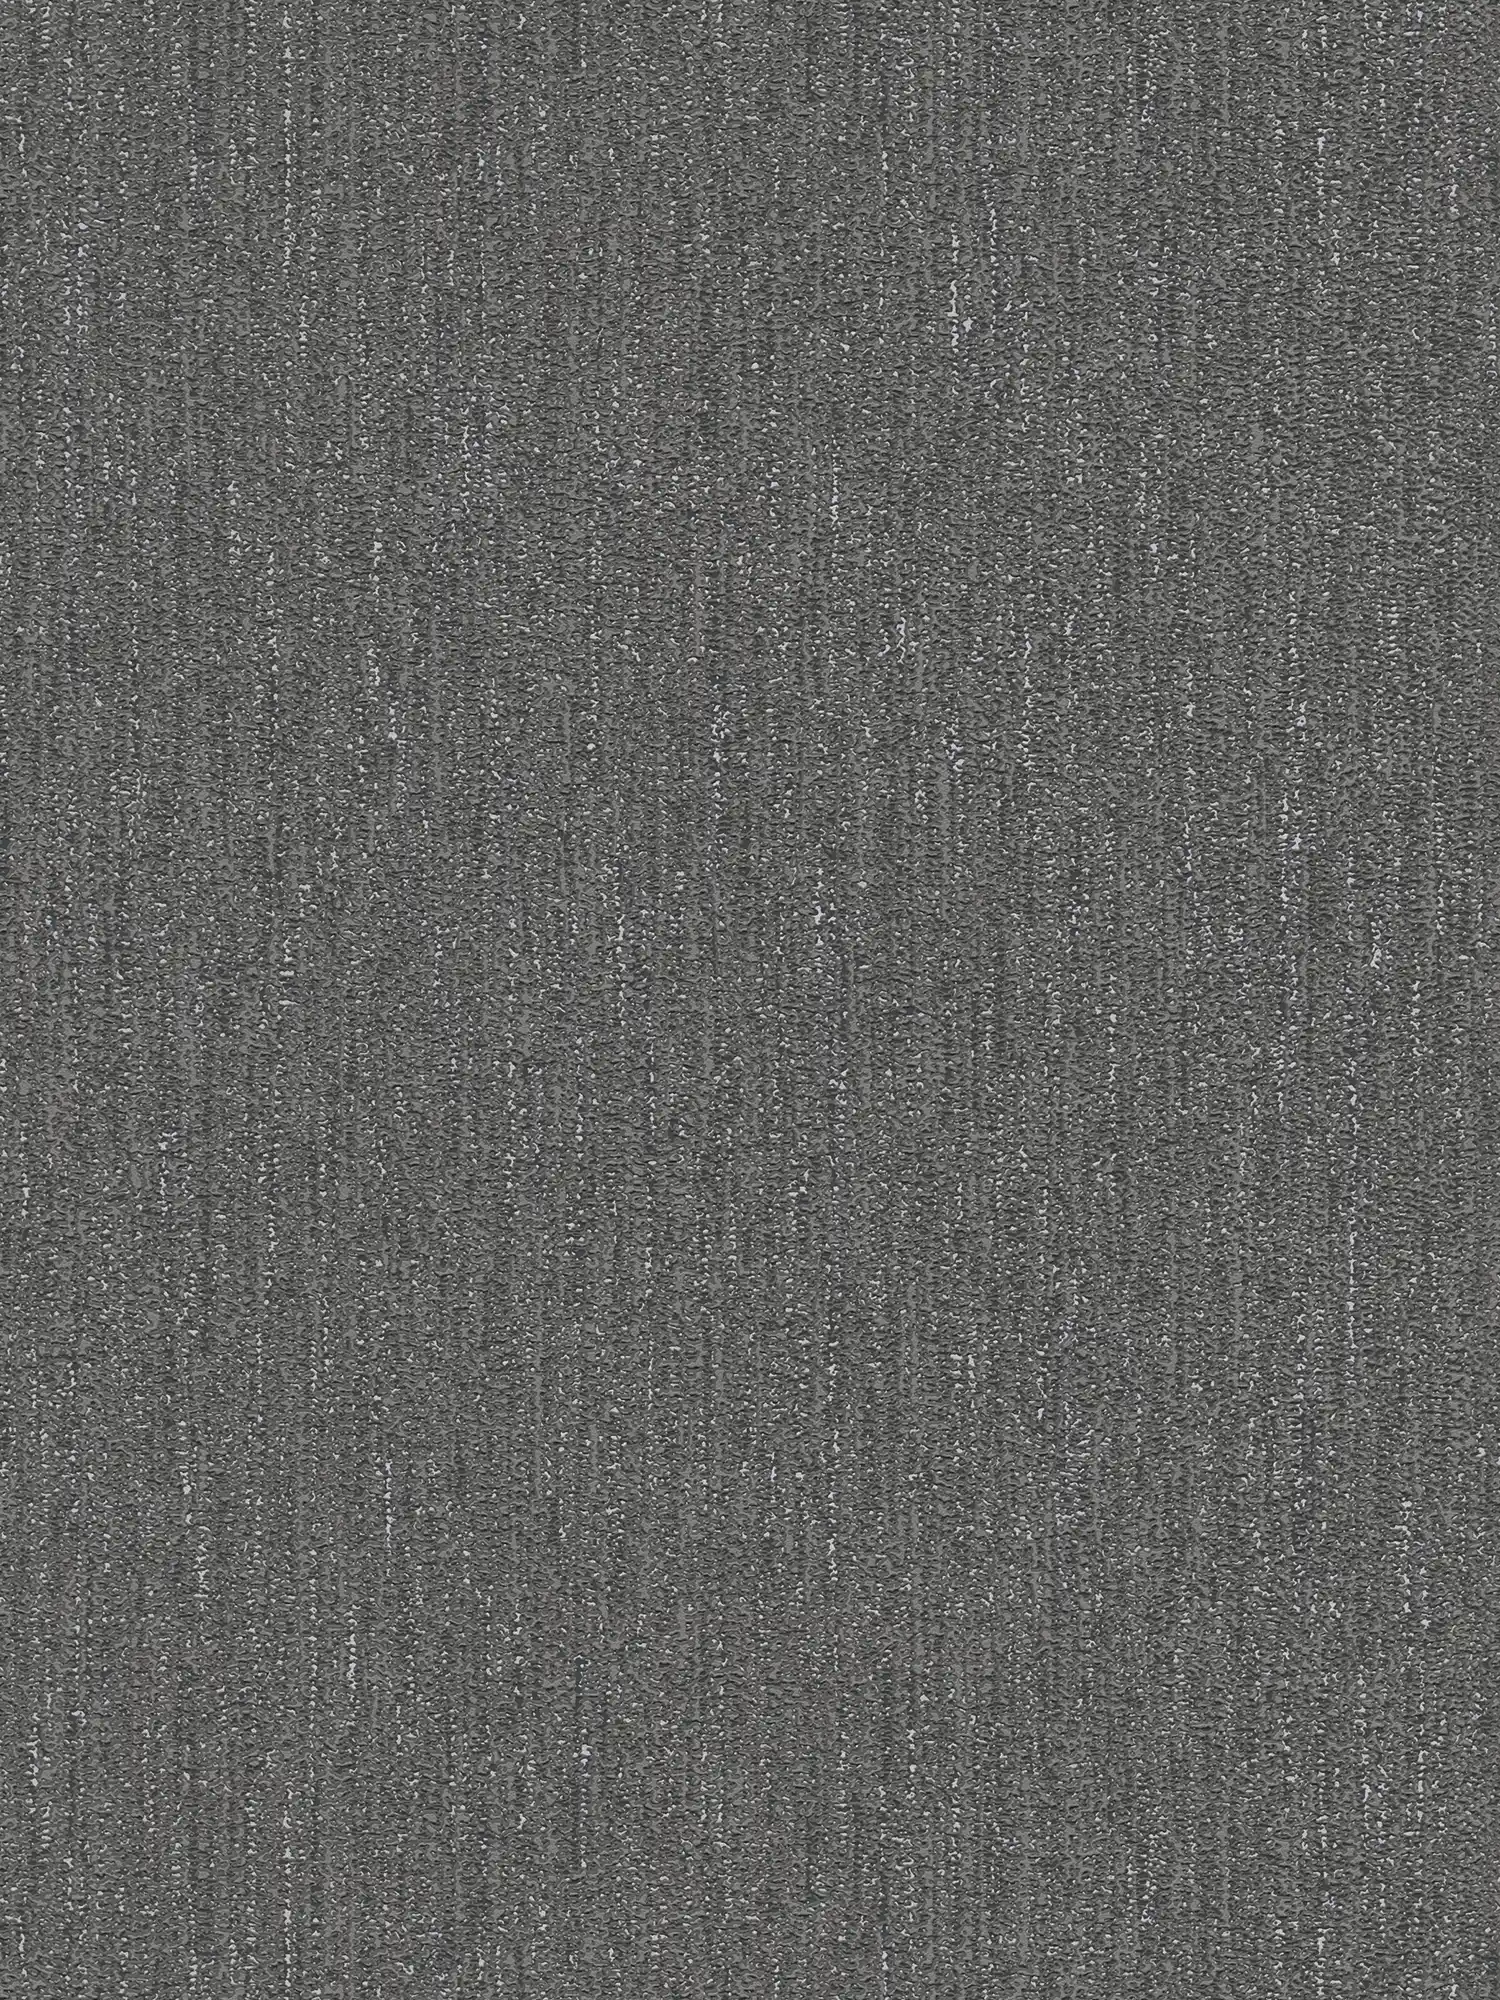 Carta da parati lucida chiara con struttura in tessuto - nero, grigio, argento
